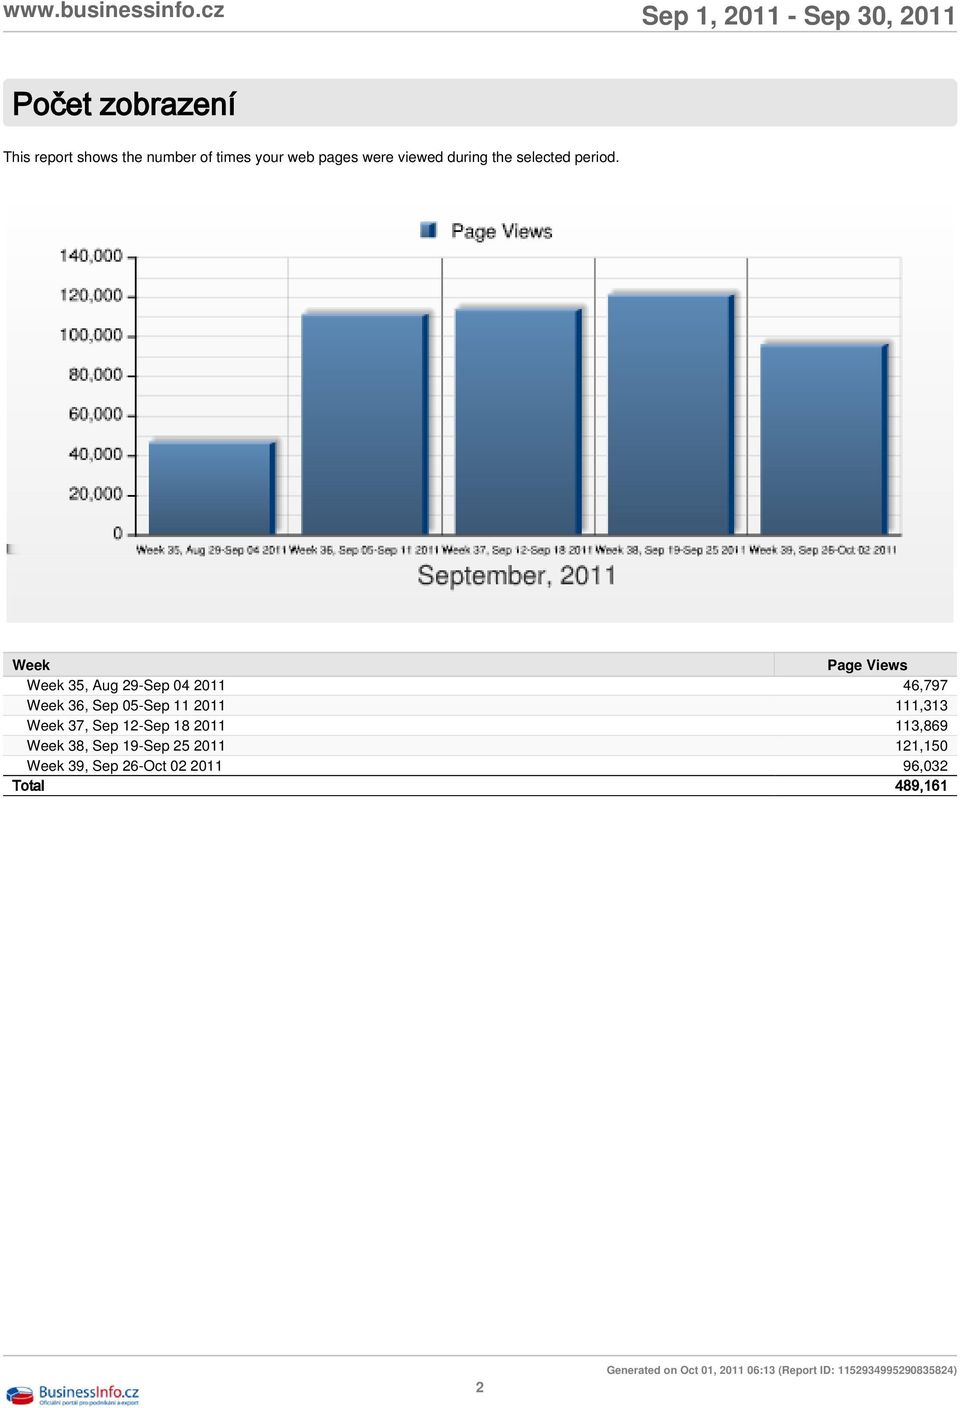 Week Page Views Week 35, Aug 29-Sep 04 2011 46,797 Week 36, Sep 05-Sep 11 2011 111,313 Week 37,